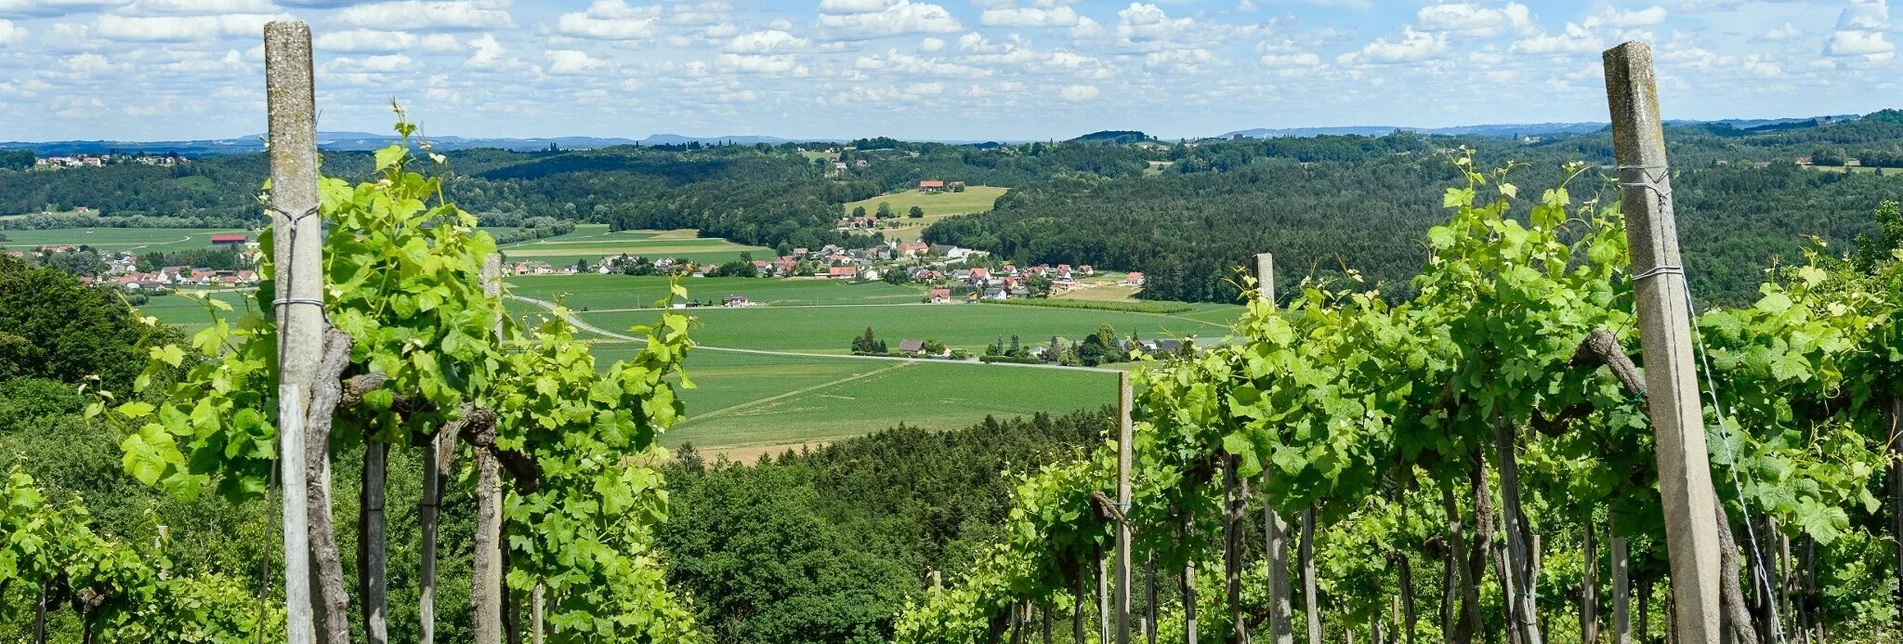 Wanderung Heimschuher-Runde Süd Nr. 5 – Tour 25 lt. WK „Von der Alm zum Wein“ - Touren-Impression #1 | © Südsteiermark